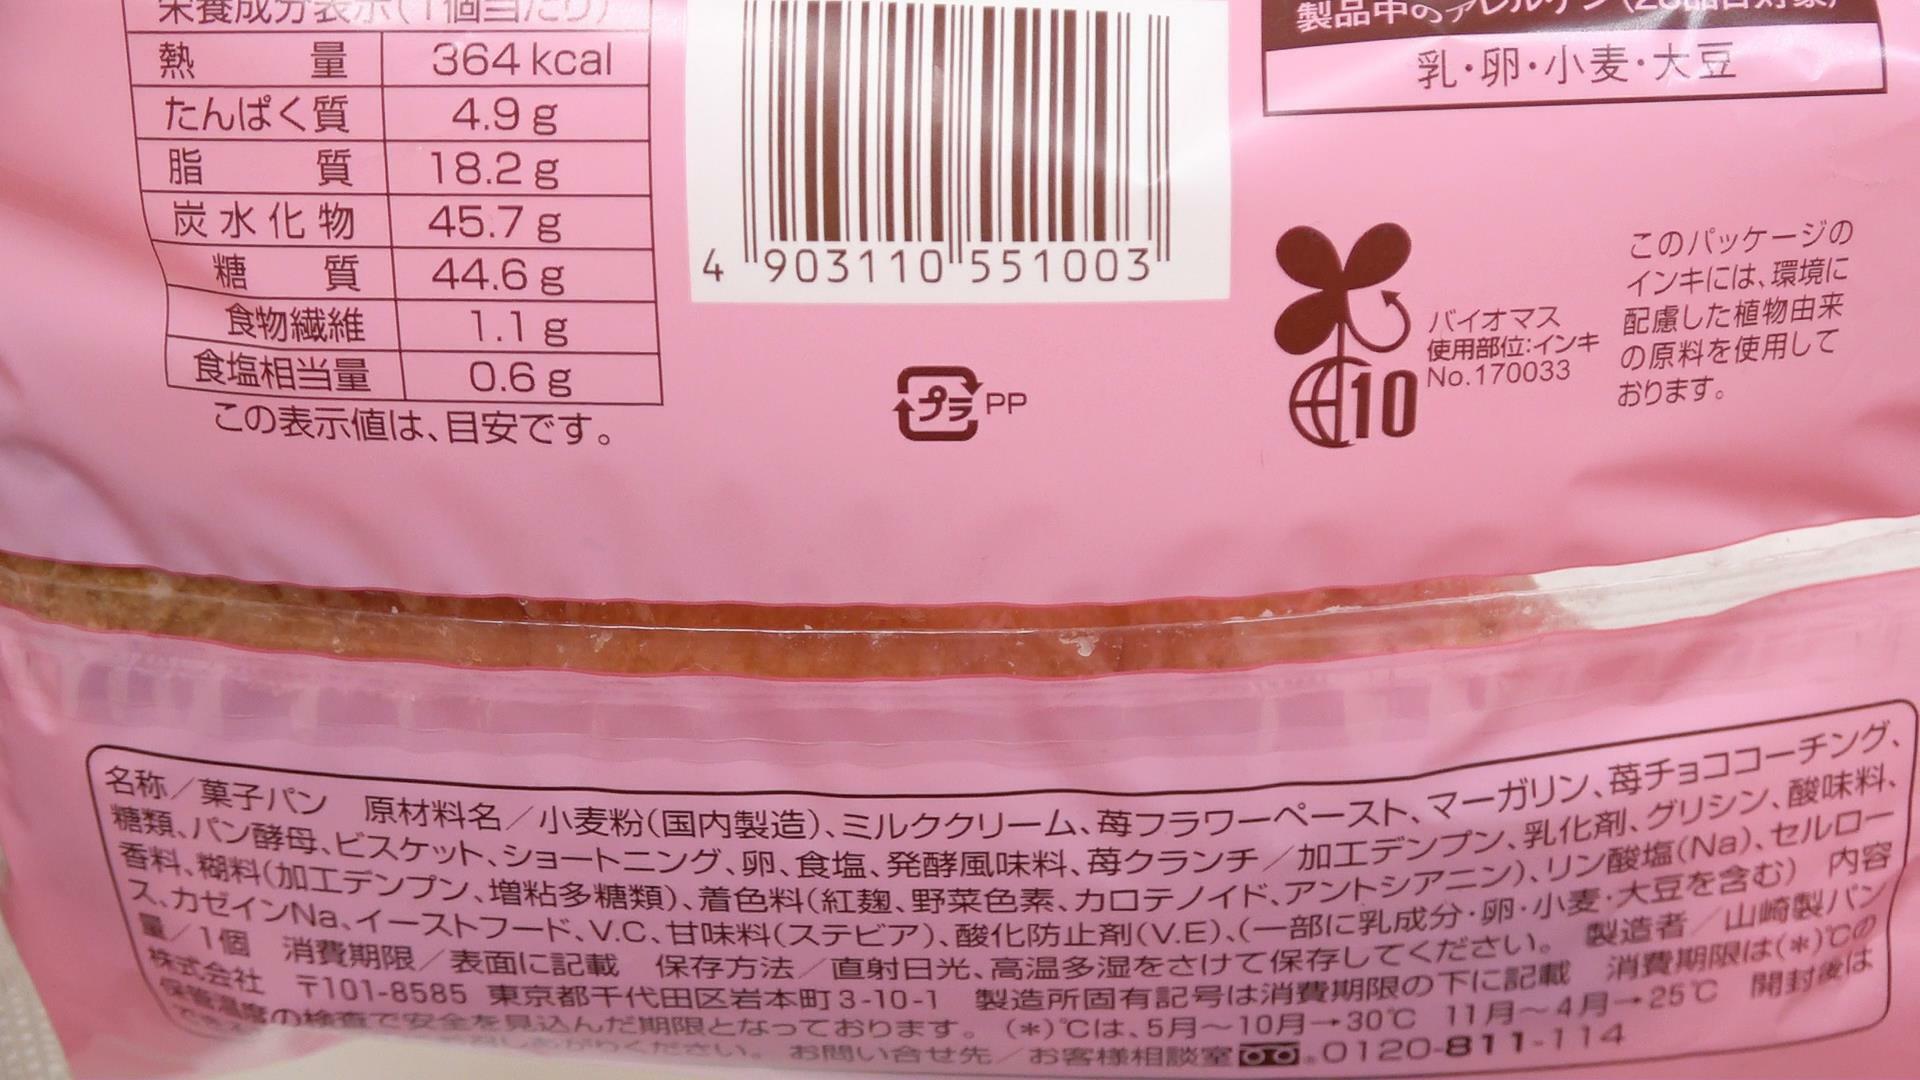 ファミマのいちごホイップデニッシュの原材料名と栄養成分表示